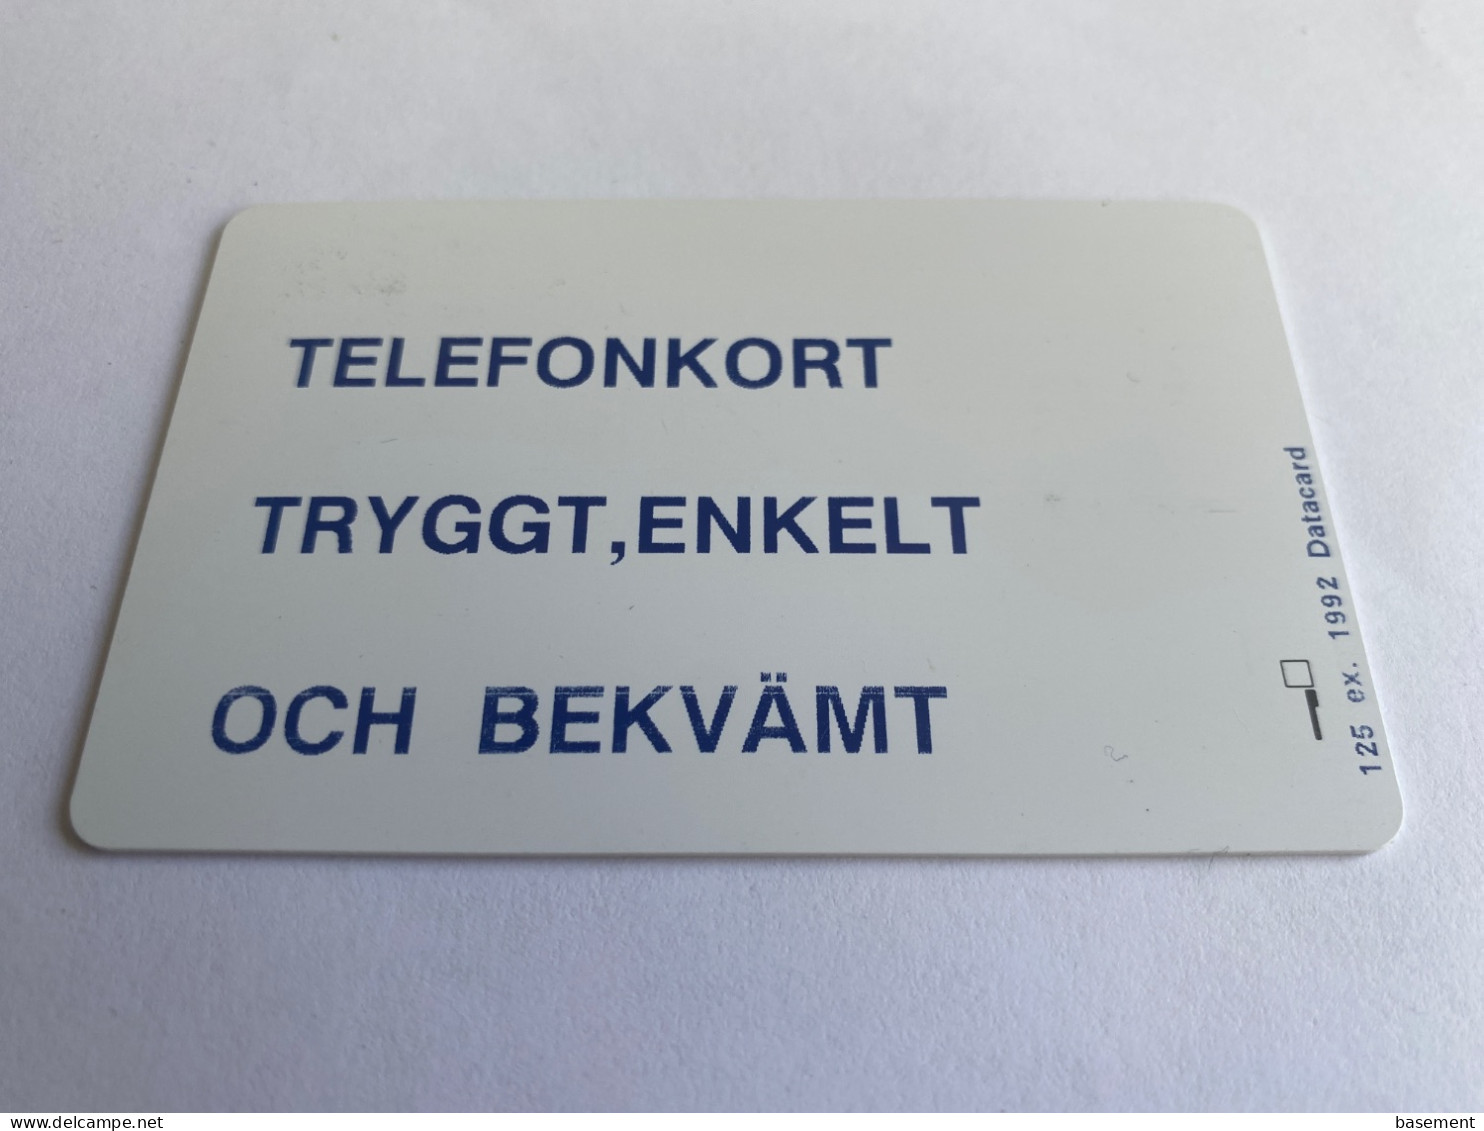 - 1 - Sweden Televerket Region Väst Offentlig Telecom - Svezia